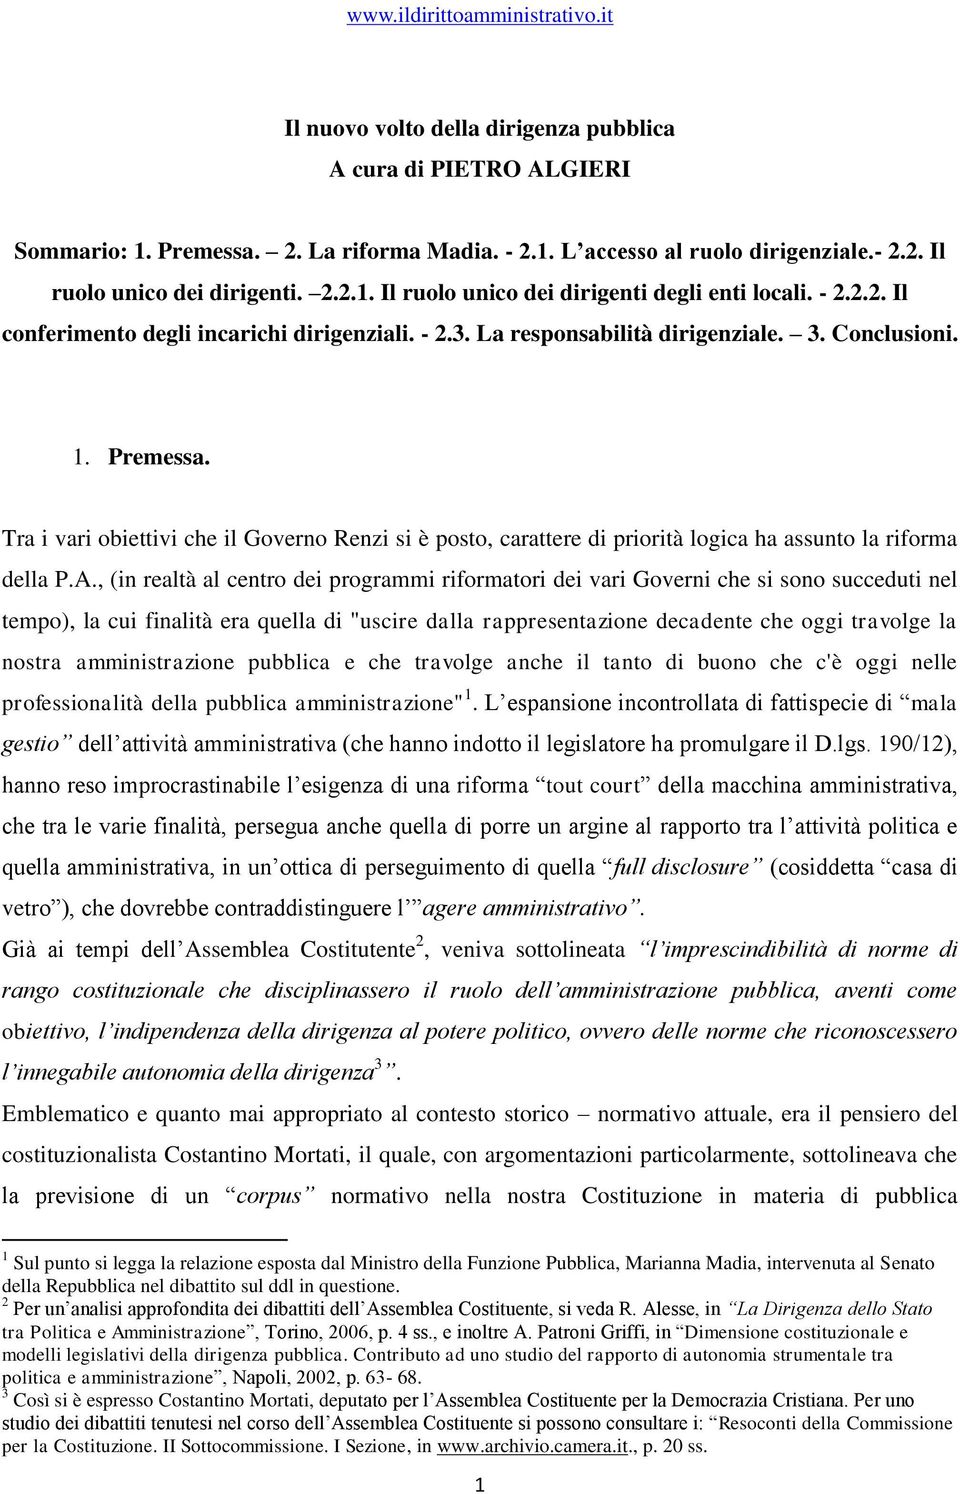 Tra i vari obiettivi che il Governo Renzi si è posto, carattere di priorità logica ha assunto la riforma della P.A.